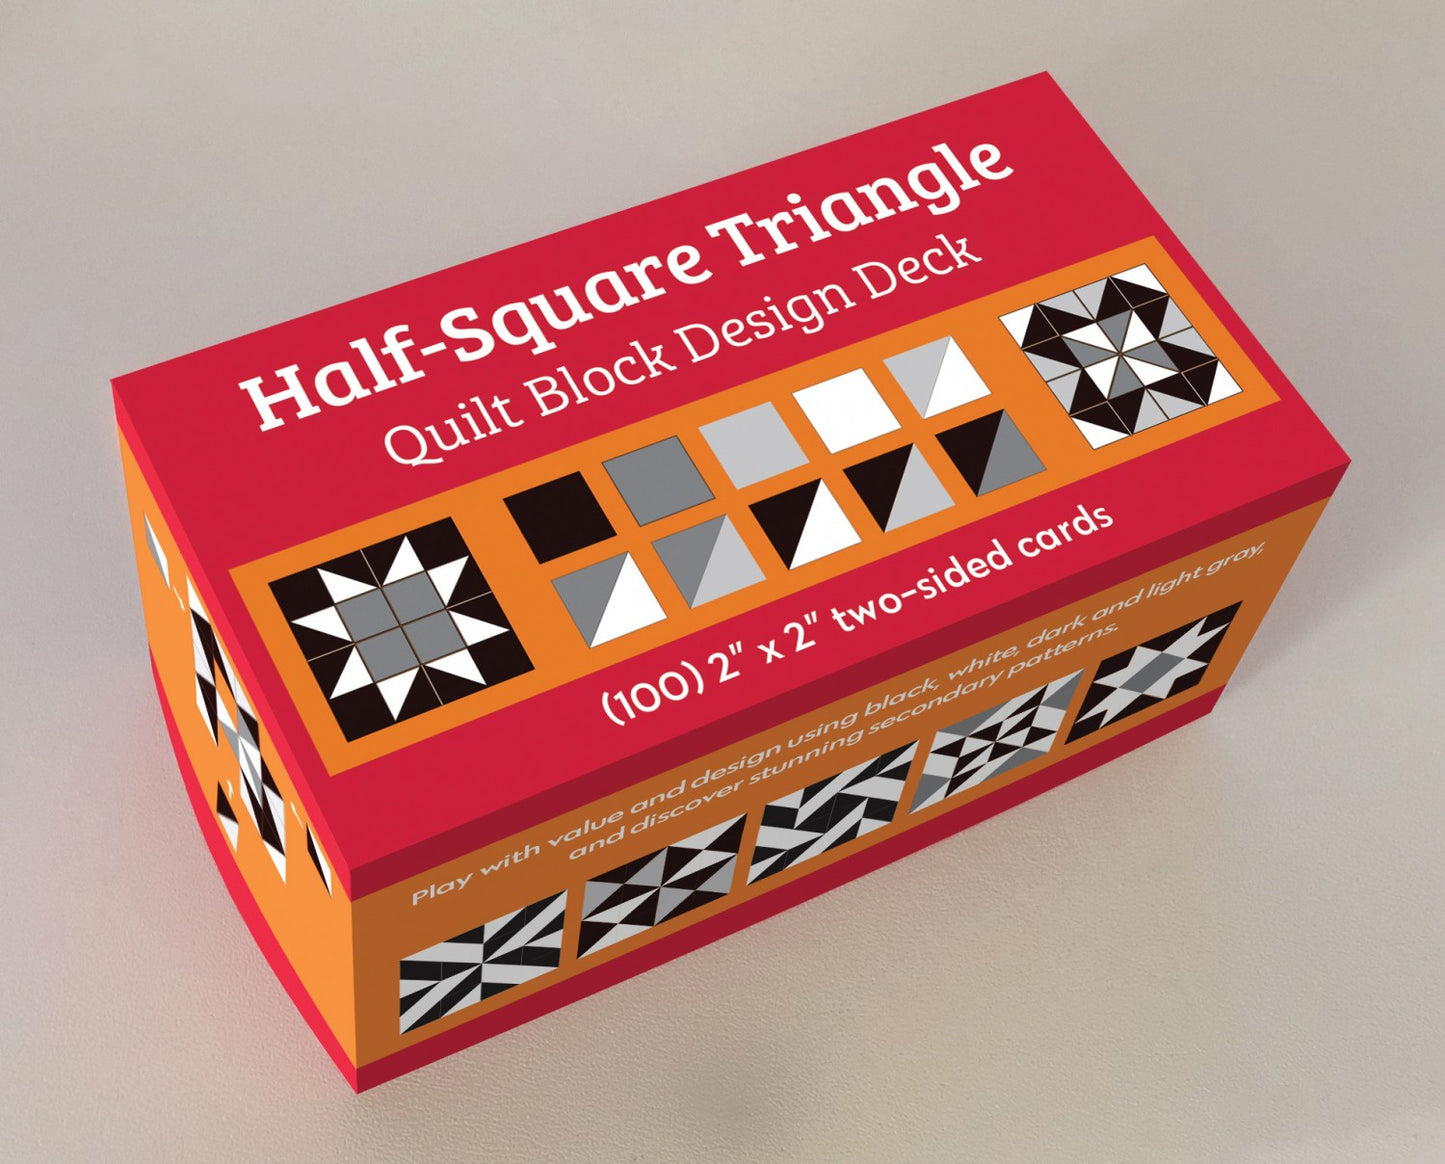 Half-Square Triangle Quilt Block Design Deck - C&T Publishing